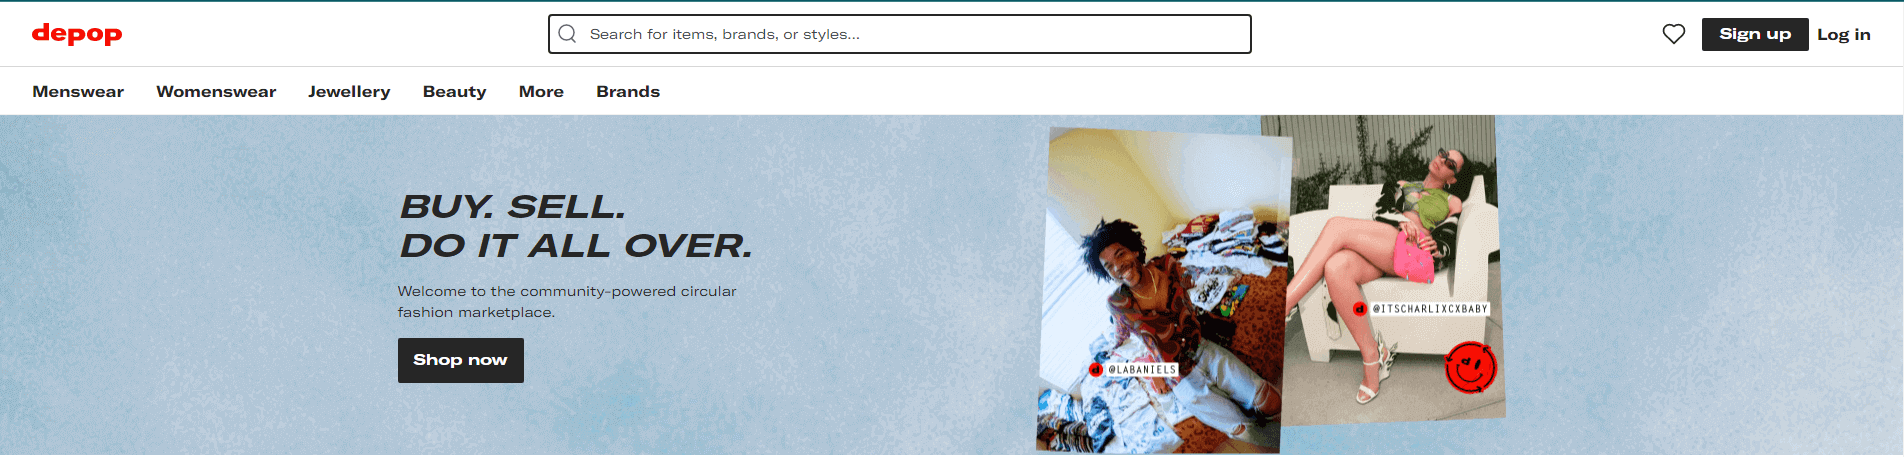 A homepage image of Depop website